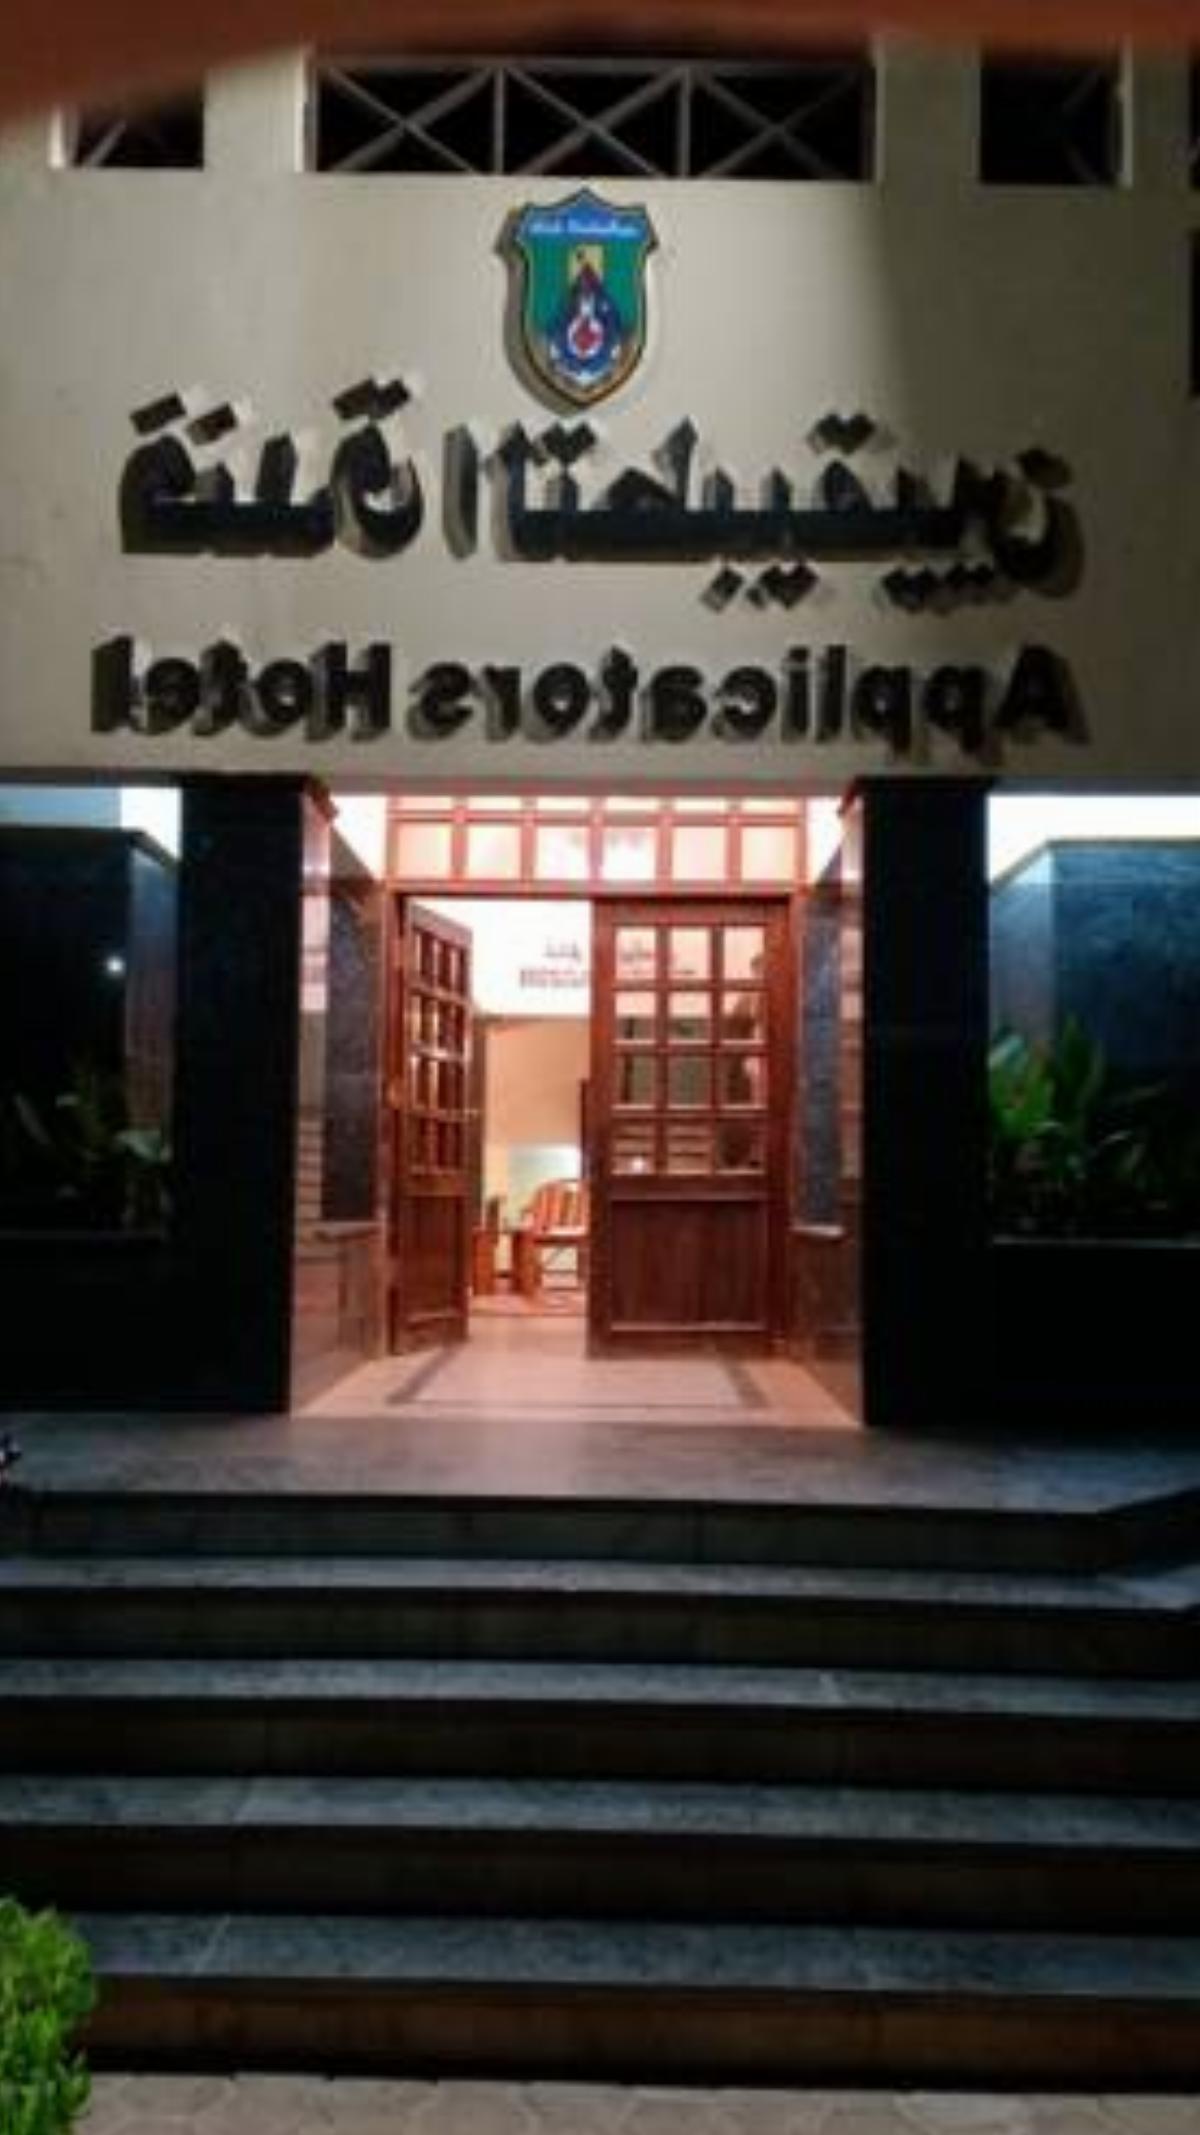 Applicators Hotel Hotel Abu Simbel Egypt